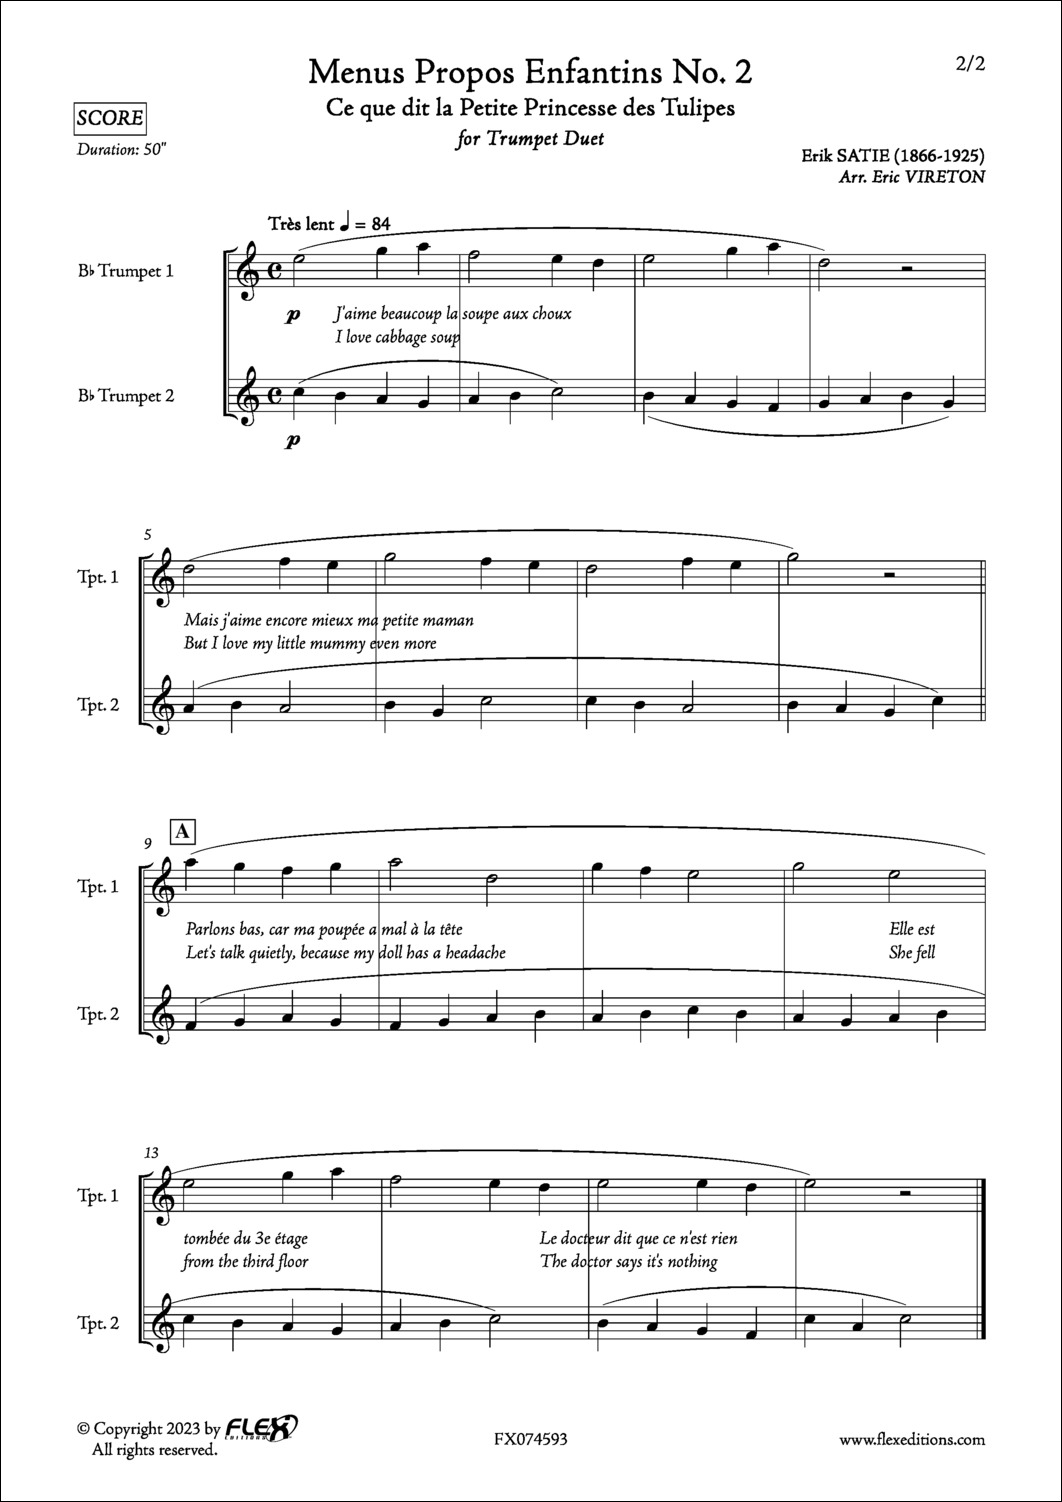 Menus Propos Enfantins No. 2 - E. SATIE - <font color=#666666>Trumpet Duet</font>